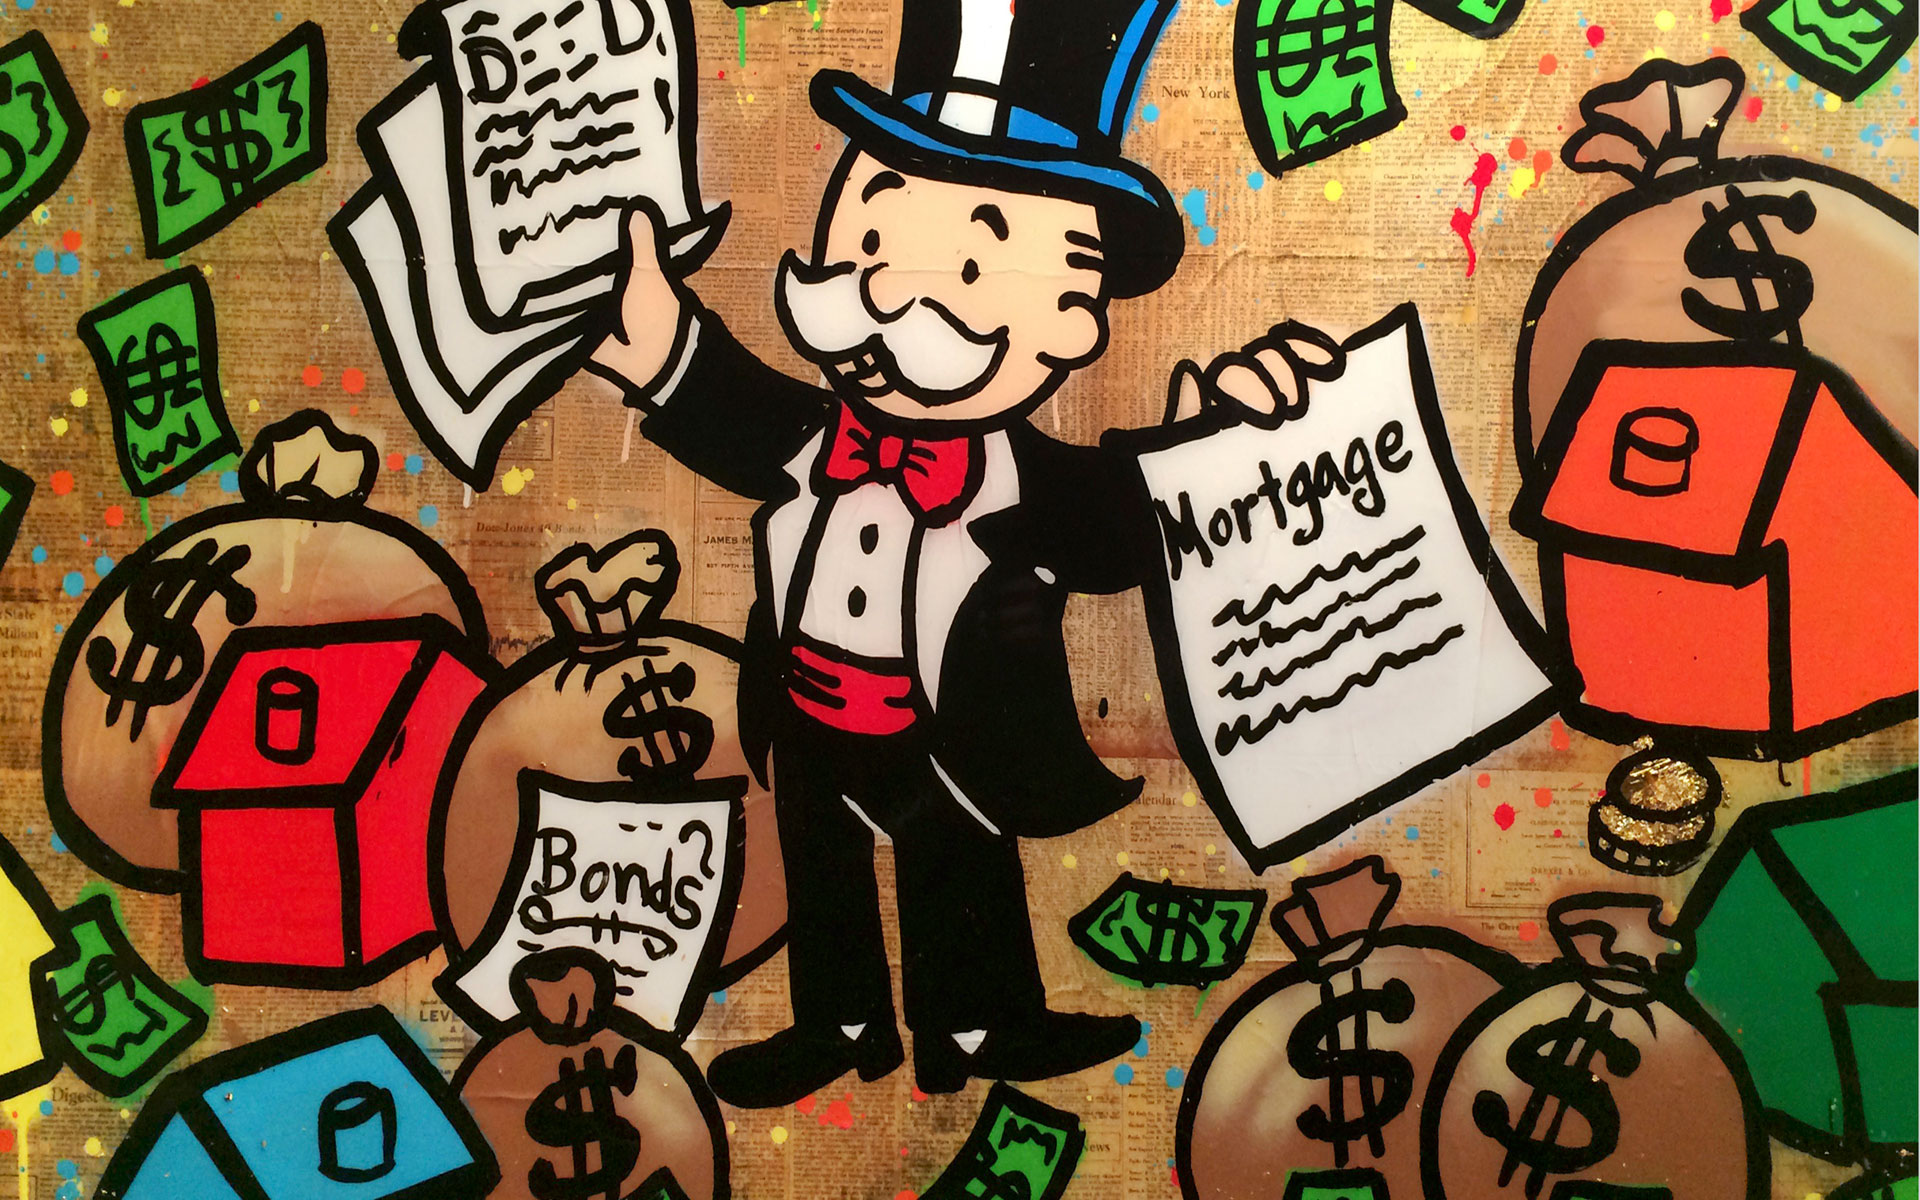 Las Vegas Monopoly Man